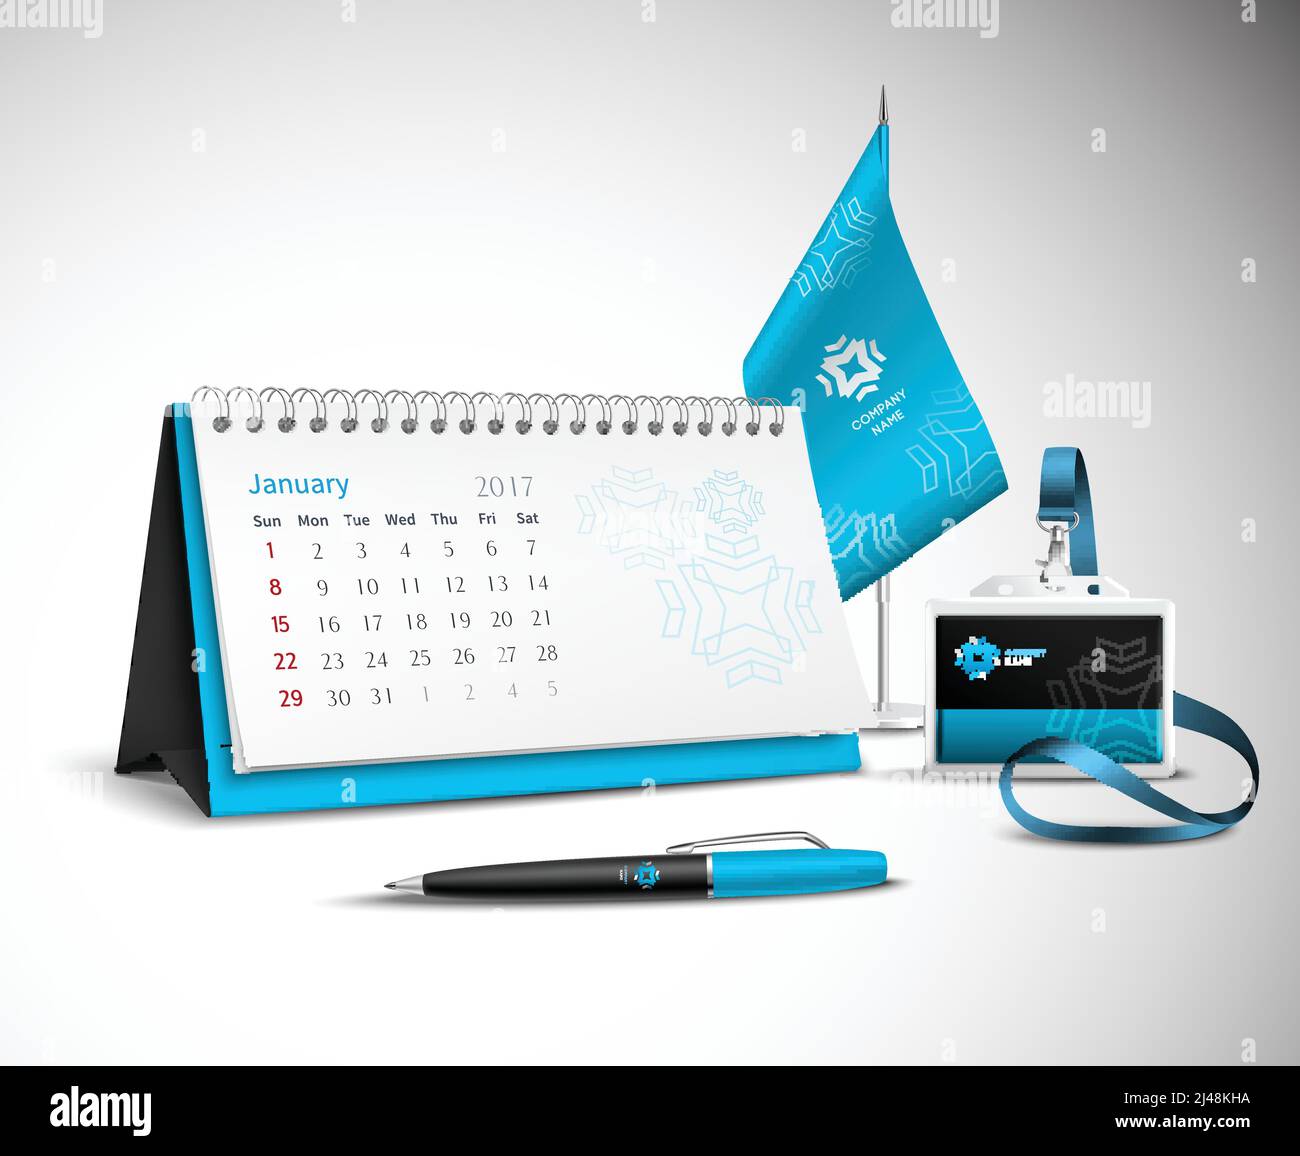 Kalender Stift Flagge und Abzeichen Corporate Identity Mockup Satz Blaue Farbe für Ihr Design auf hellem Hintergrund realistische Vektor Abbildung Stock Vektor